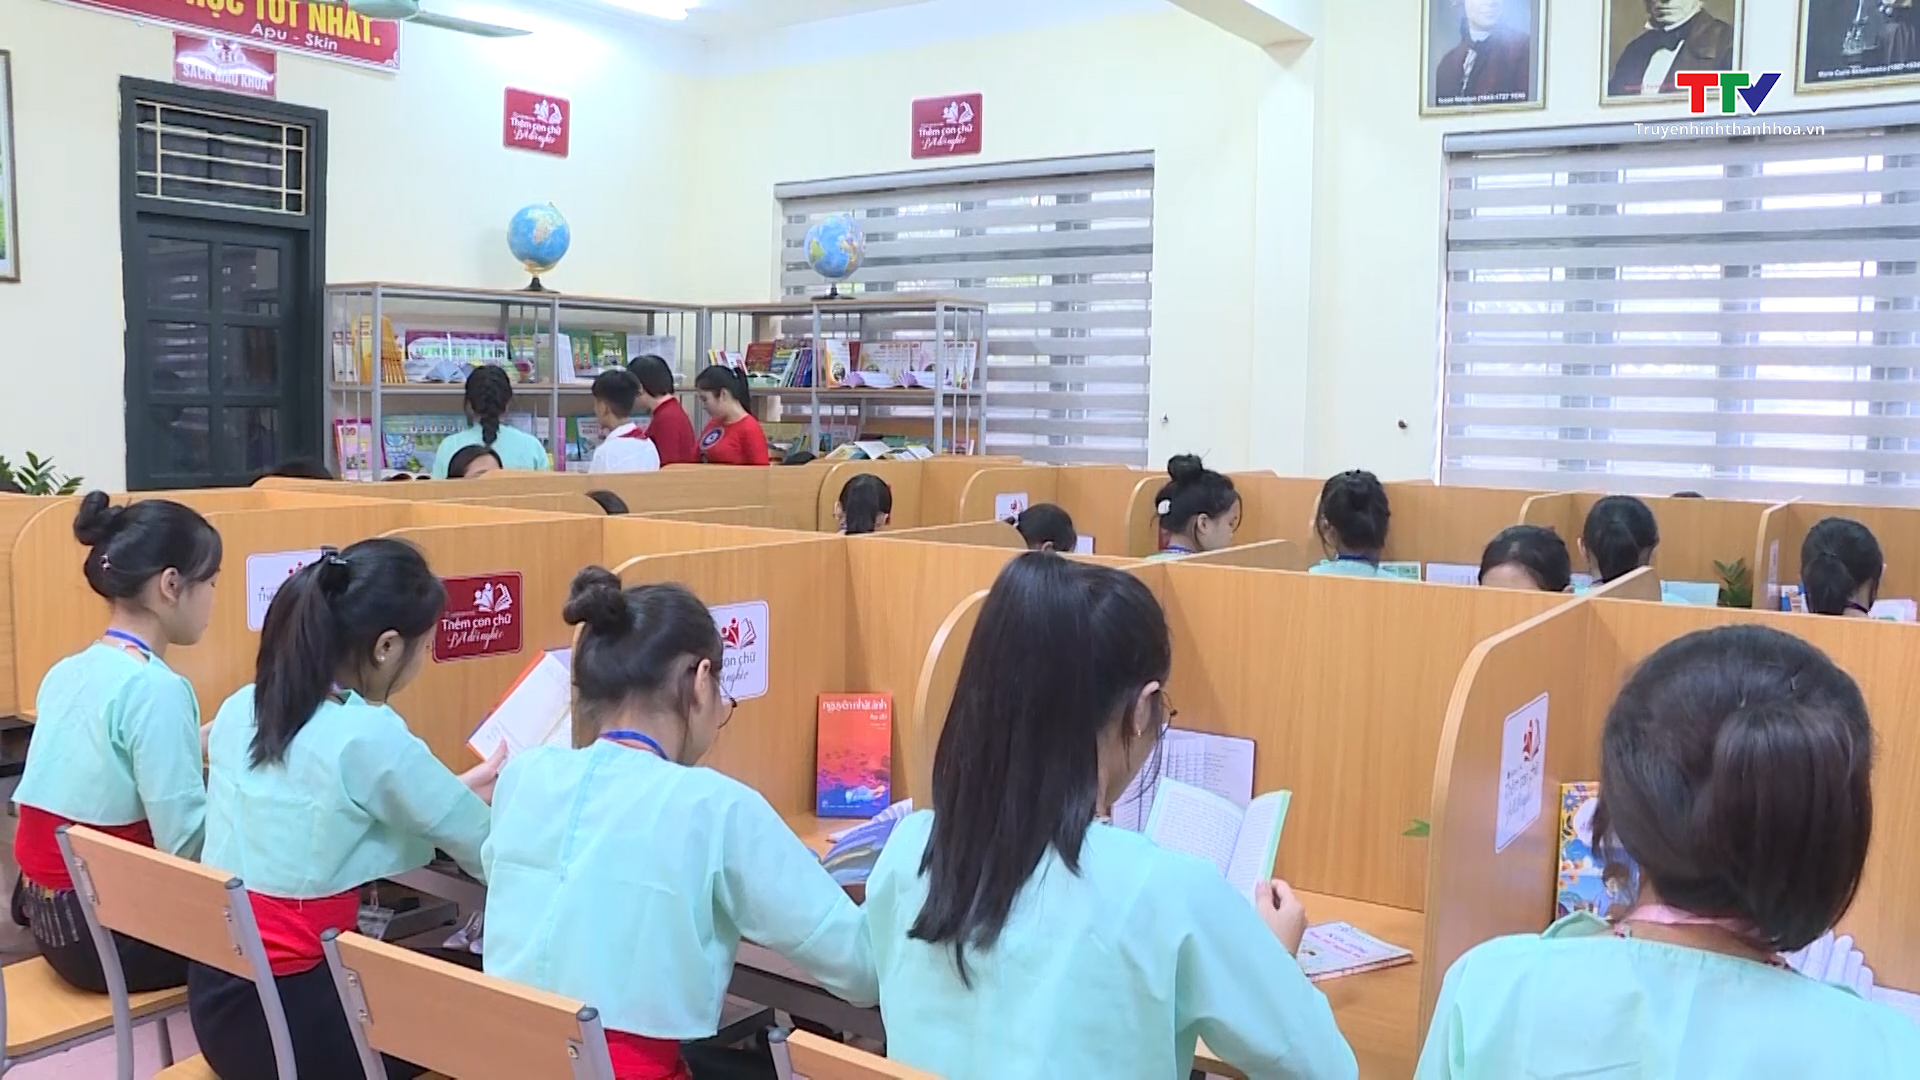 Agribank Nam Thanh Hóa chung sức vì cộng đồng- Ảnh 1.